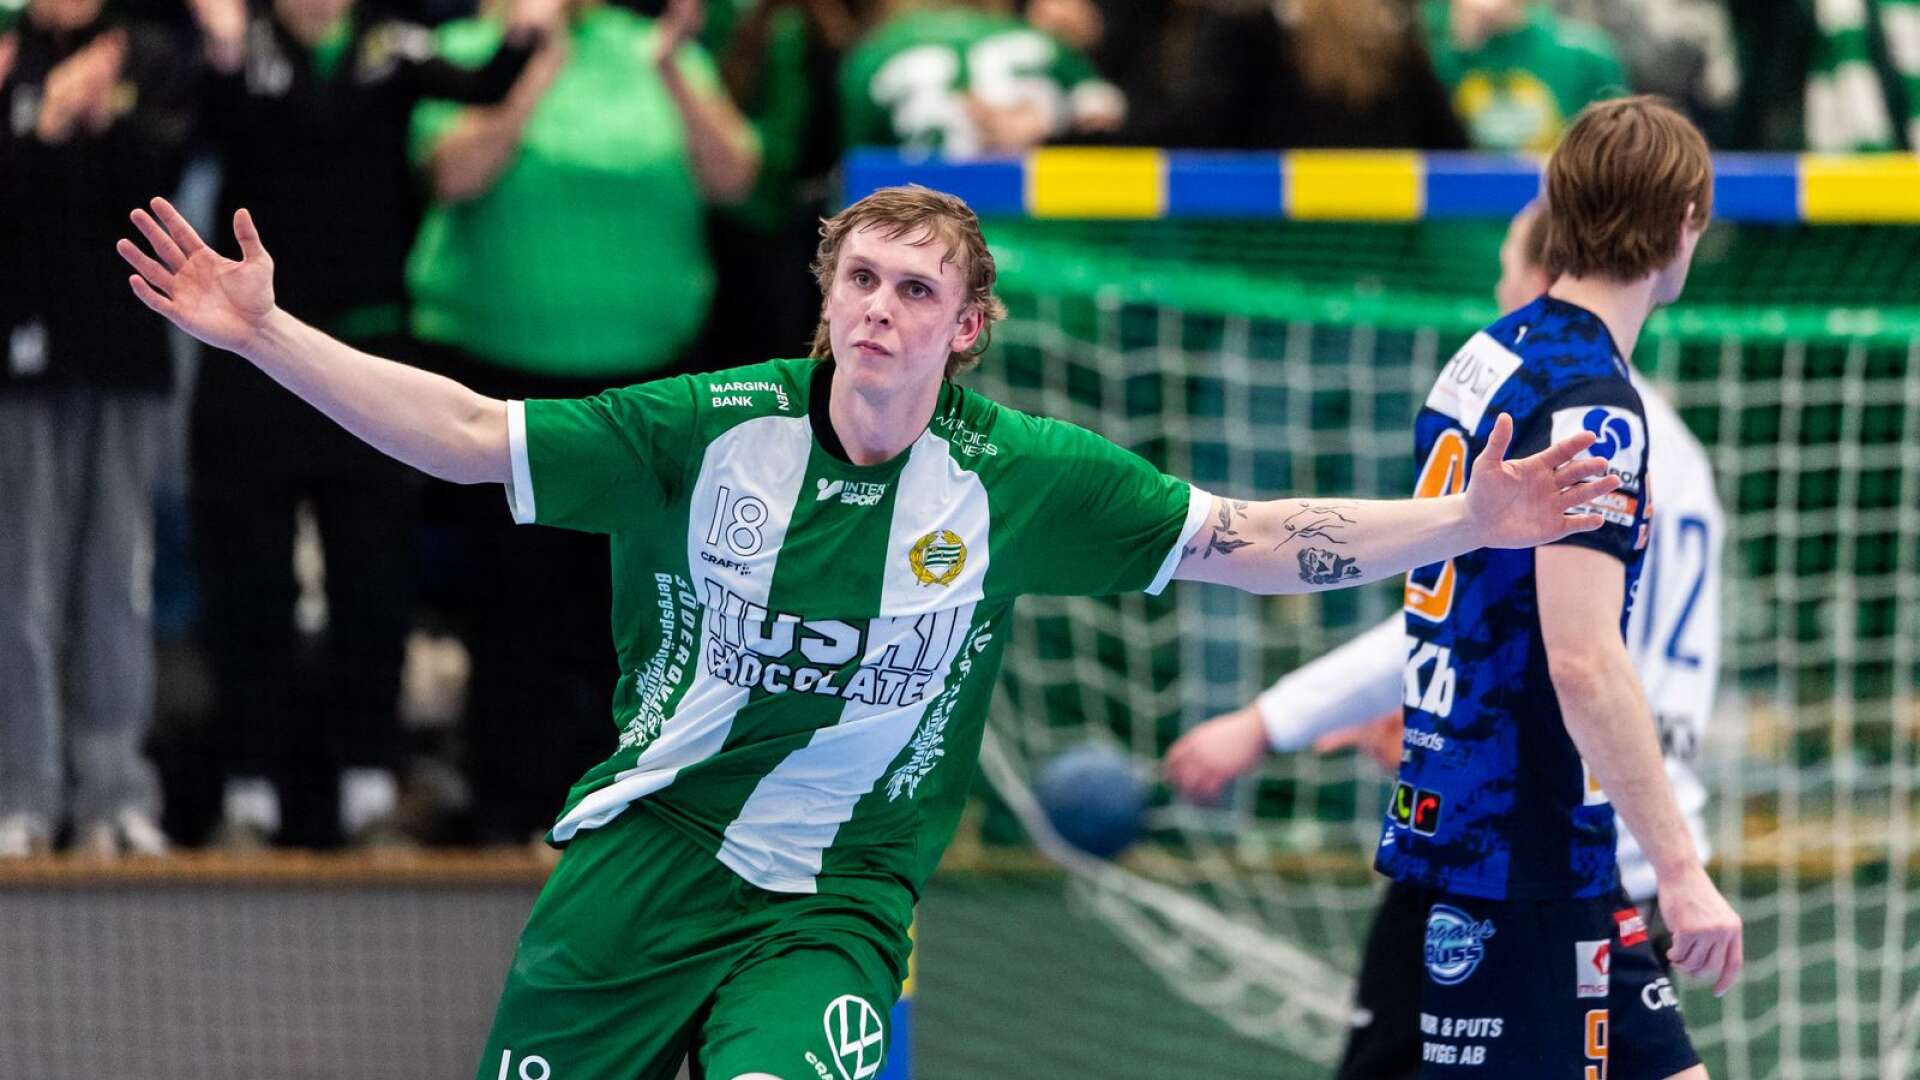 Hammarbys Edvin Aspenbäck uppmärksammas efter sin fina säsong i Handbollsligan. Hjosonen har blivit uttagen som högernia i Handbollsligans All star team